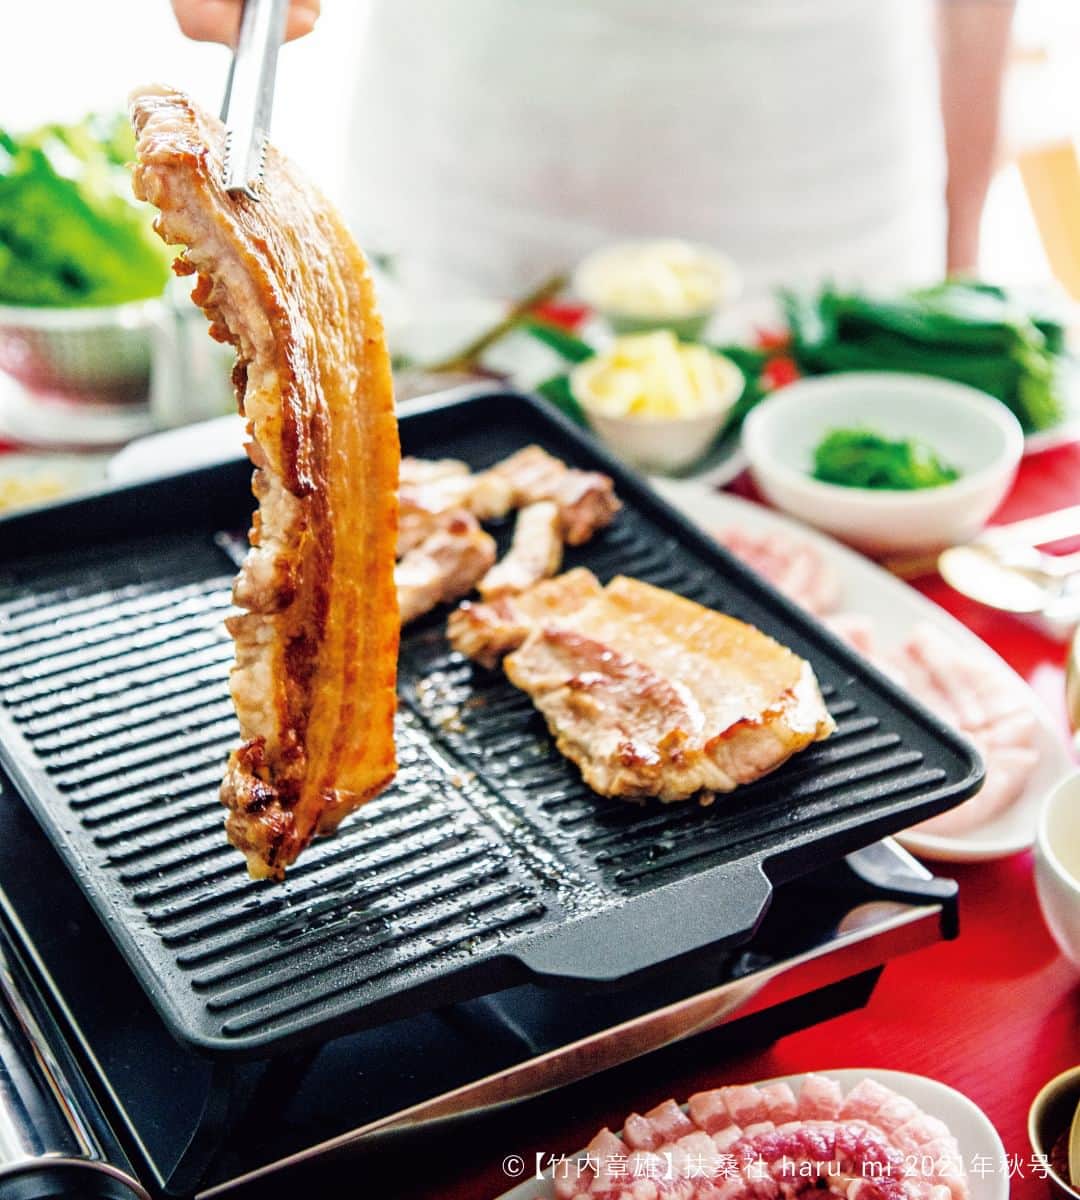 栗原はるみ「ゆとりの空間 」さんのインスタグラム写真 - (栗原はるみ「ゆとりの空間 」Instagram)「. ＼レシピ特集／ 「おうちで楽しむ韓国料理」  辛みやごま油の香りに食欲をそそられる韓国料理は、 日本でも大人気。 そんな韓国料理の人気メニューを、 おうちで楽しみませんか。  ピビンパやサムギョプサル、チヂミなど、 おもてなしにも使える人気メニューから、 トッポッキやナムルなどの、 手軽にできる家庭料理まで、 韓国料理のレシピを集めました。  「サムギョプサル」は豚バラ肉の焼き肉で、 焼き肉といっても肉以上に 野菜をたっぷり食べるのが韓国式。  厚切り肉の脂身がカリカリになるまで焼いたら 食べやすく切り分け、 用意した生野菜やナムル、 キムチや好みのたれと一緒にいただきます。  ----------------------- 「サムギョプサル」の作り方 -----------------------  ◆材料（作りやすい分量）  豚バラ肉（2cm厚さ）…3～4枚 サンチュ・サラダ菜・グリーンリーフ…各適量 えごまの葉・青じそ…各適量 韓国青とうがらし…適量 レモンのくし切り…適量 にんにく…適量 はるみジャン…適量 はるみコチュジャン…適量 レモンコチュジャン…適量 手作りサムジャン…適量 韓国のり…適量 ナムル各種…適量 白ごはん・雑穀ごはん…各適量  ※はるみジャン・はるみコチュジャン・レモンコチュジャン・手作りサムジャンの作り方はwebページで紹介しています♪  ◆作り方  ❶豚肉は（かたまりの場合は2cm厚さに切り）片面に1cm幅くらいの切り込みを入れる。  ❷葉ものはすべて洗って水気をよくきり、器に盛る。  ❸グリルパンを熱し、豚肉を焼きつける。こんがりと焼き色がついたら返して両面焼き、キッチンばさみや包丁で食べやすく切り分ける。好みで豚肉を焼く脇でにんにくや青とうがらしも焼く。  ❹葉ものに焼いた肉を取り分けてのせ、好みのたれをつけ、ナムルなどを一緒に巻いていただく。  ----------------------- レシピ特集「おうちで楽しむ韓国料理」では、 ピビンパやチヂミなど、 おもてなしにも使える人気メニューから、 トッポッキやナムルなどの、 手軽にできる家庭料理まで、 韓国料理のレシピを多数ご紹介しています♪  詳しくはプロフィールのリンクから ※特集ページからご覧いただけます @yutorino_kukan  #おうちで楽しむ韓国料理 #韓国料理 #韓国料理レシピ #한국요리 #レシピ #栗原はるみ #ゆとりの空間 #レシピ特集 #ピビンパ #サムギョプサル #ナムル #キムチ #韓国冷麺 #チヂミ #koreanfood #recipe #yutorinokukan #yutorino_kukan」9月4日 20時00分 - yutorino_kukan